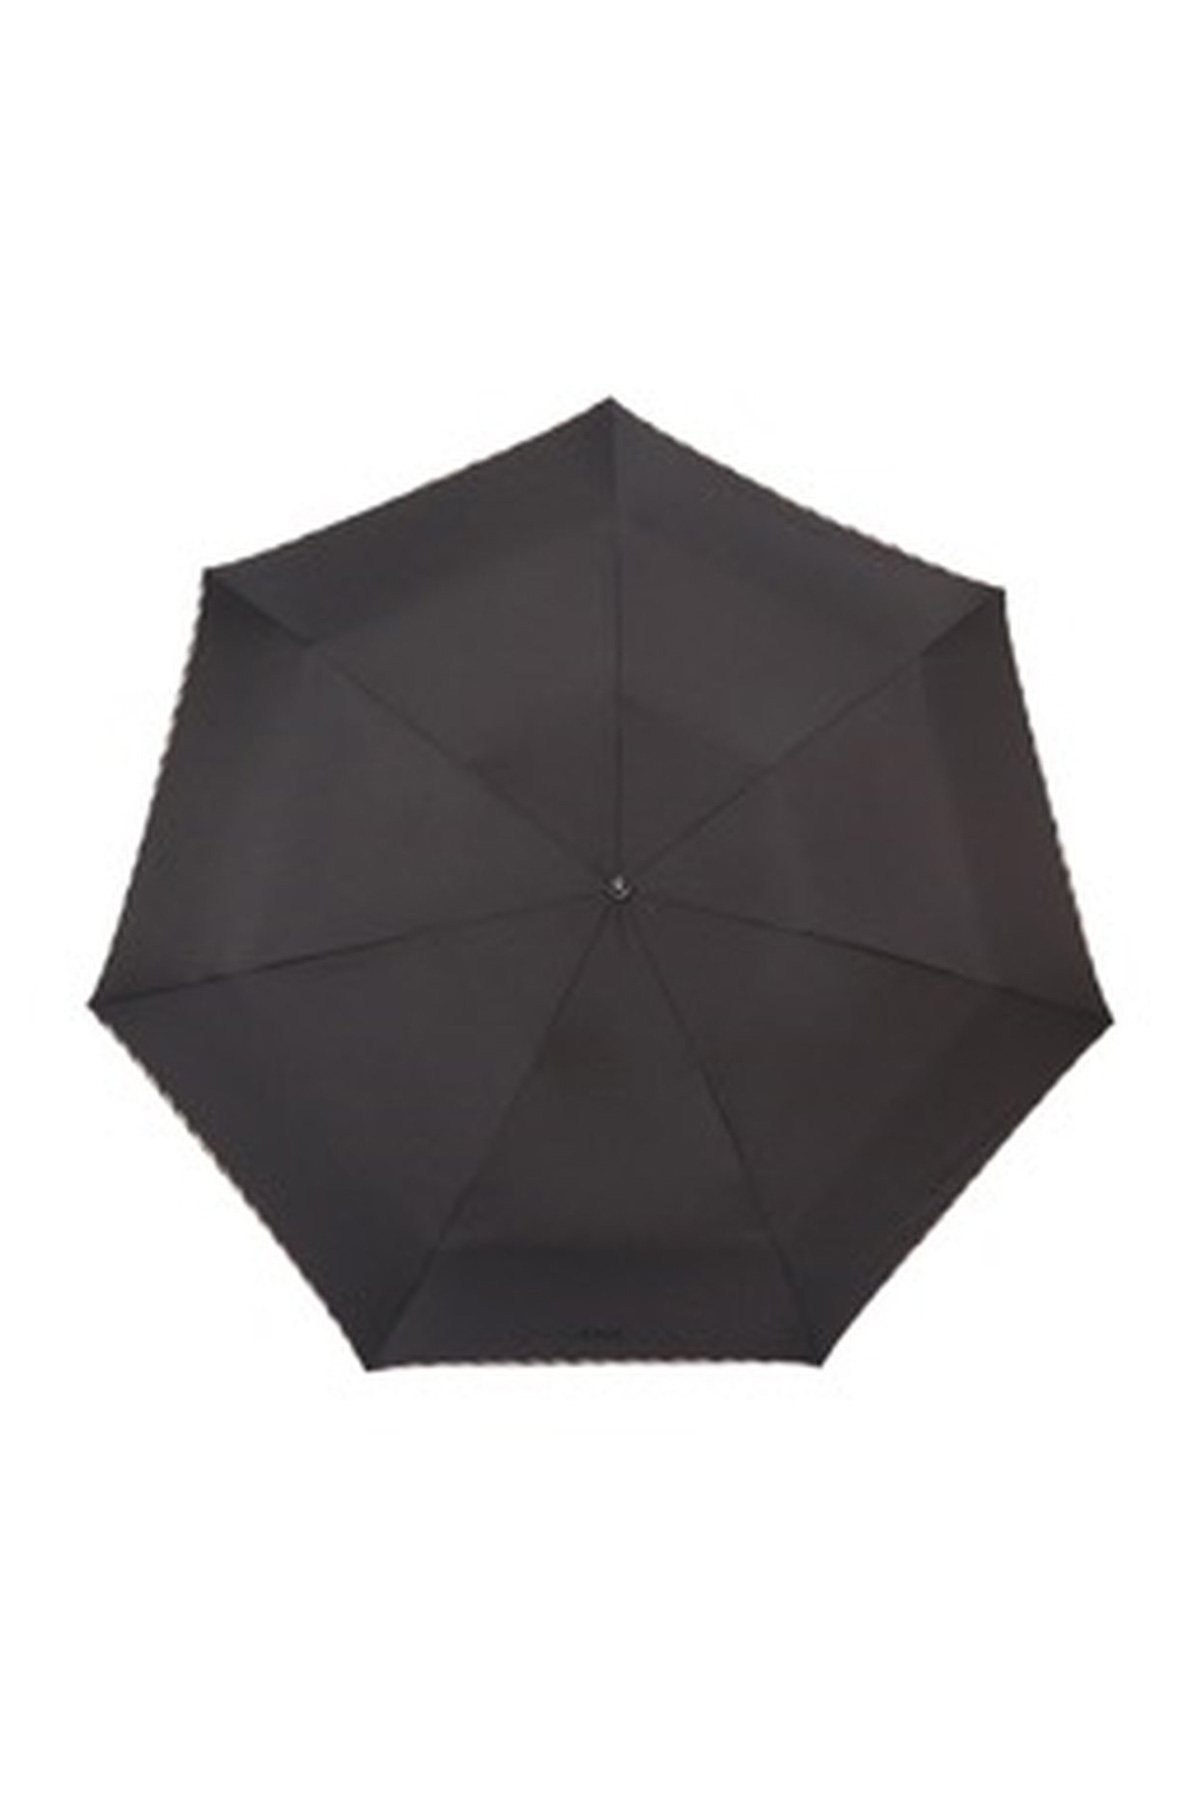 【紳士雨傘】折りたたみ傘無地パイピング 詳細画像 3